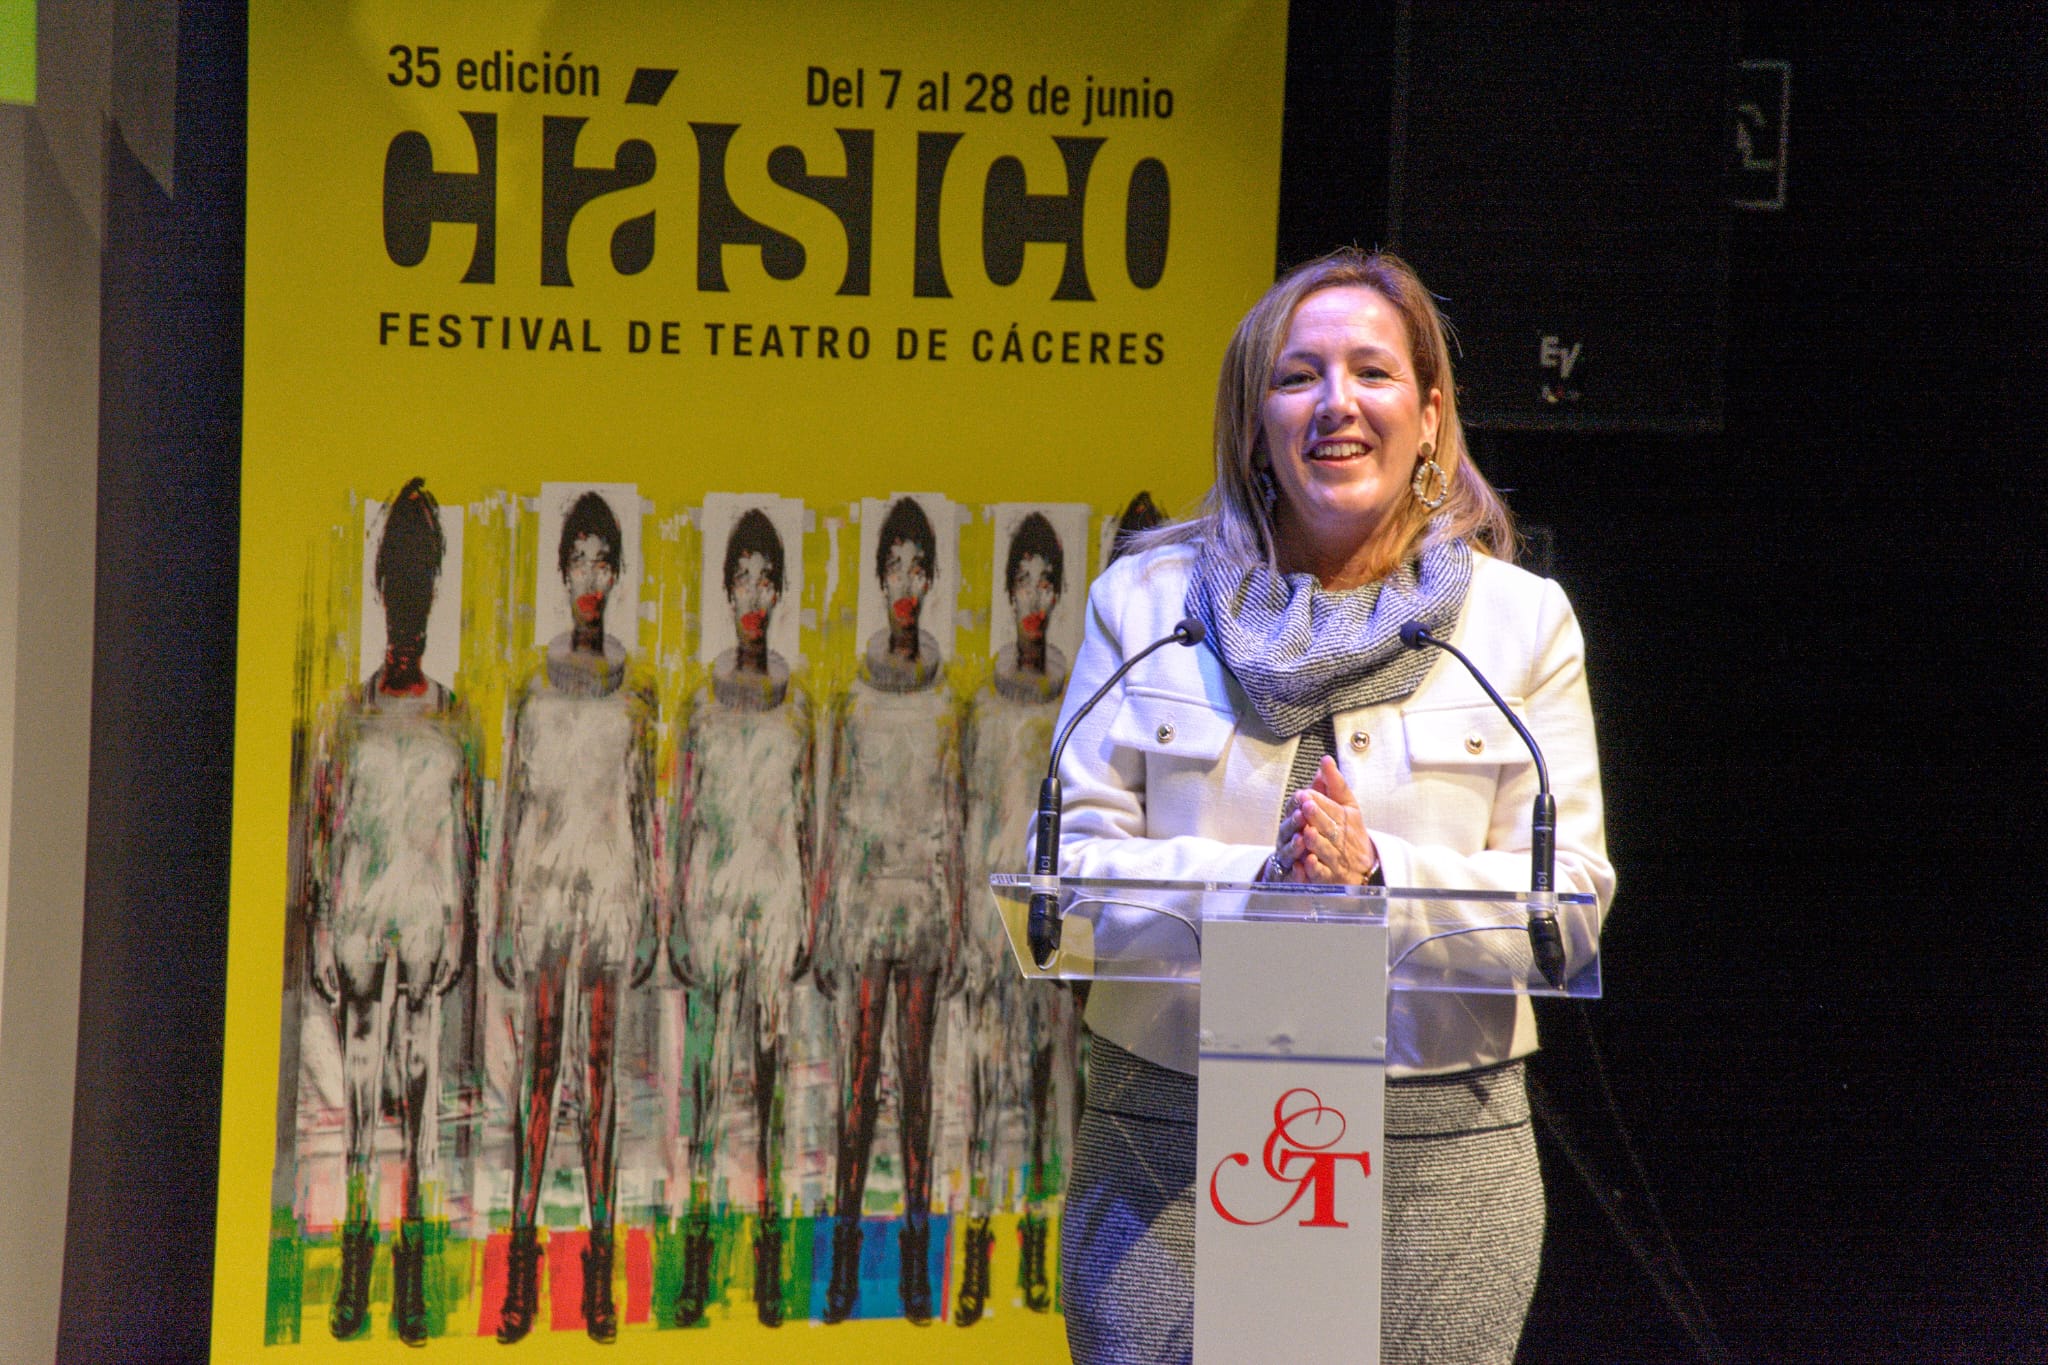 Image 8 of article La 35 edición del Festival de Teatro Clásico de Cáceres entregará por primera vez unos premios en una gala benéfica